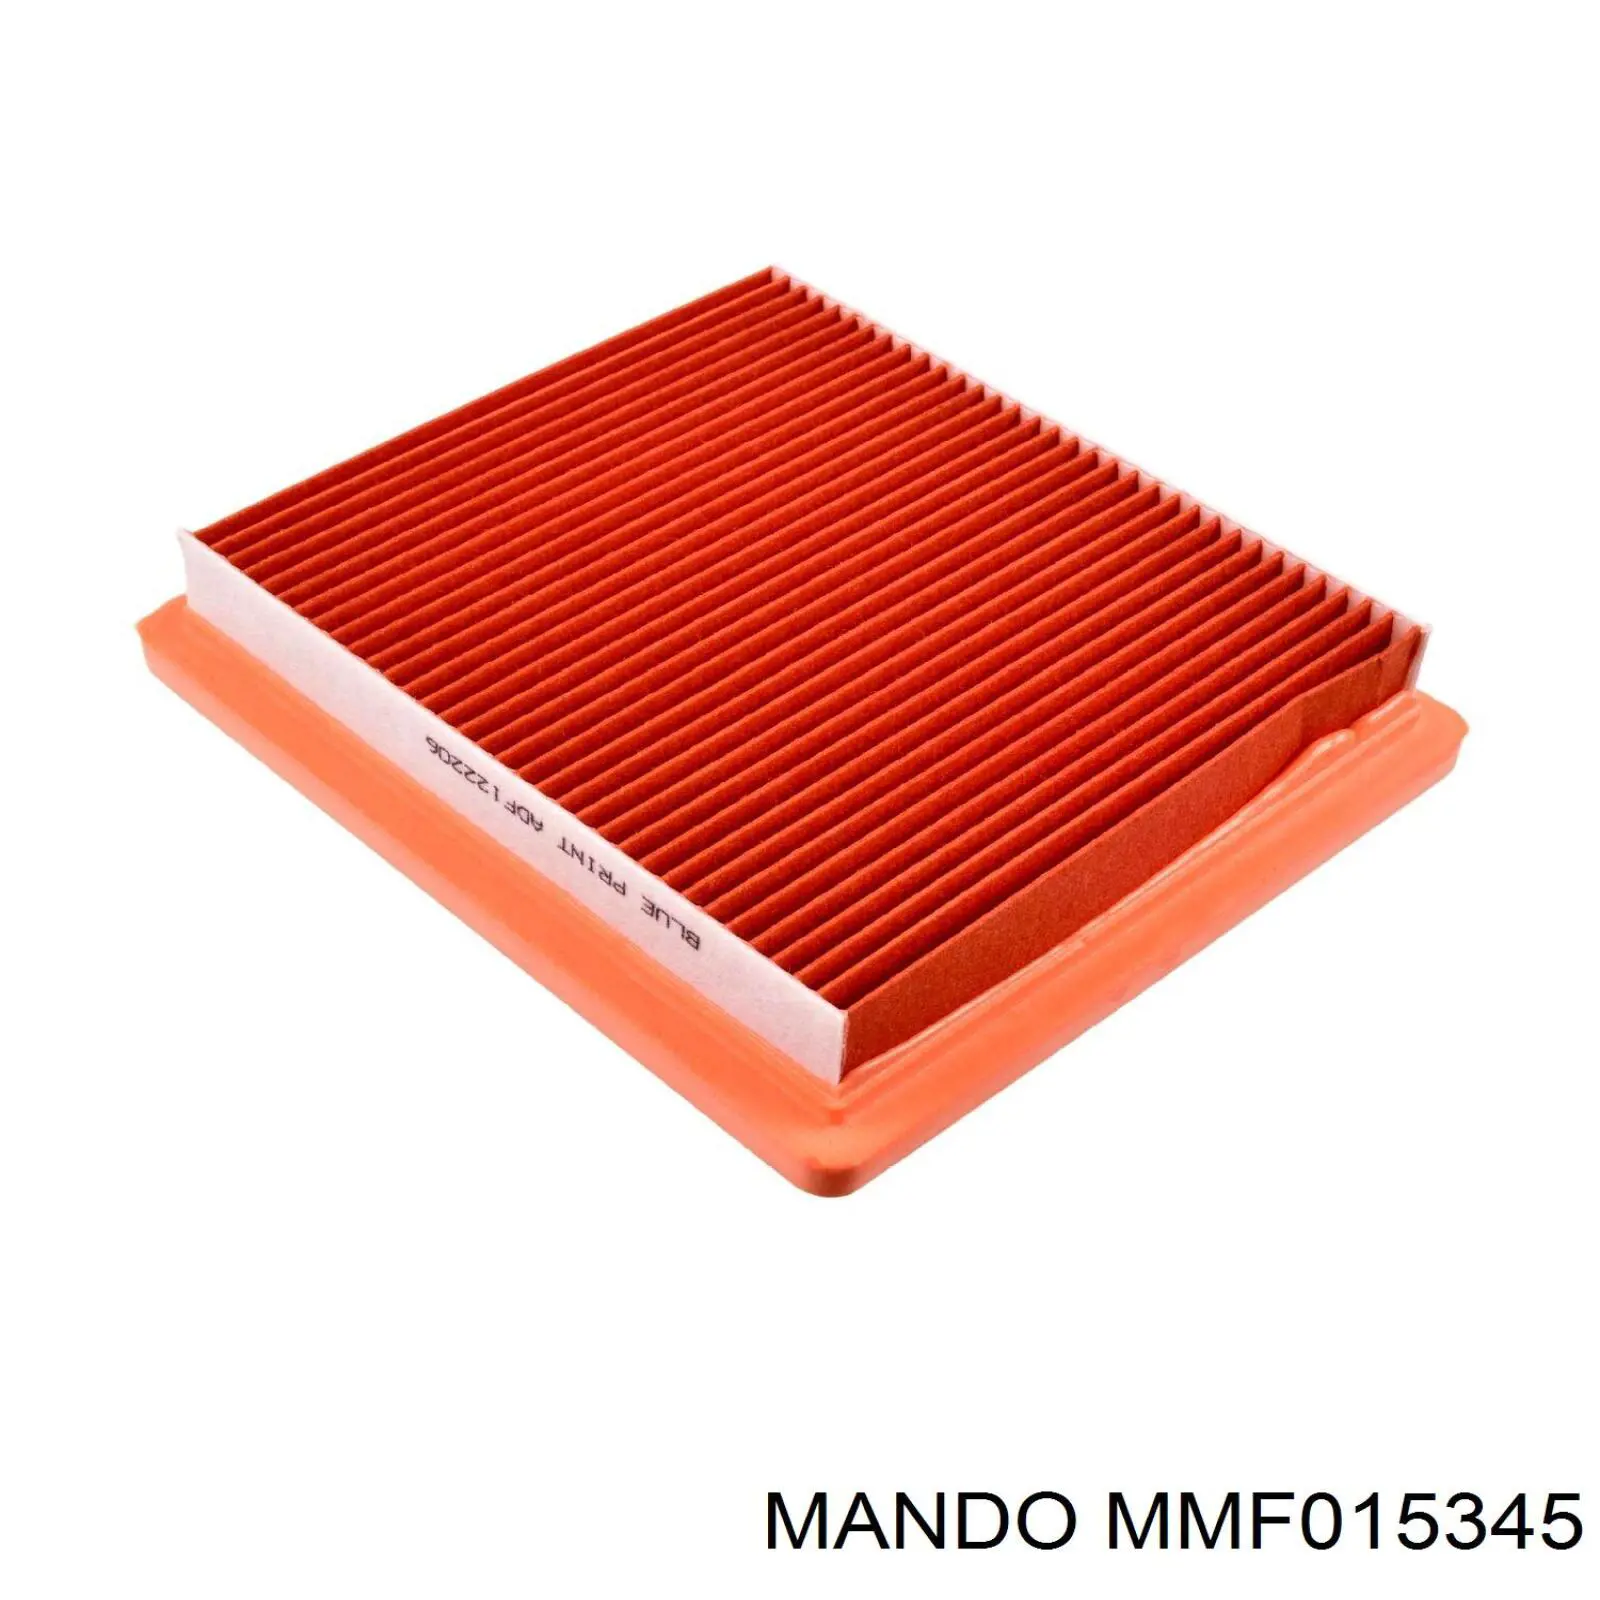 MMF015345 Mando фільтр повітряний